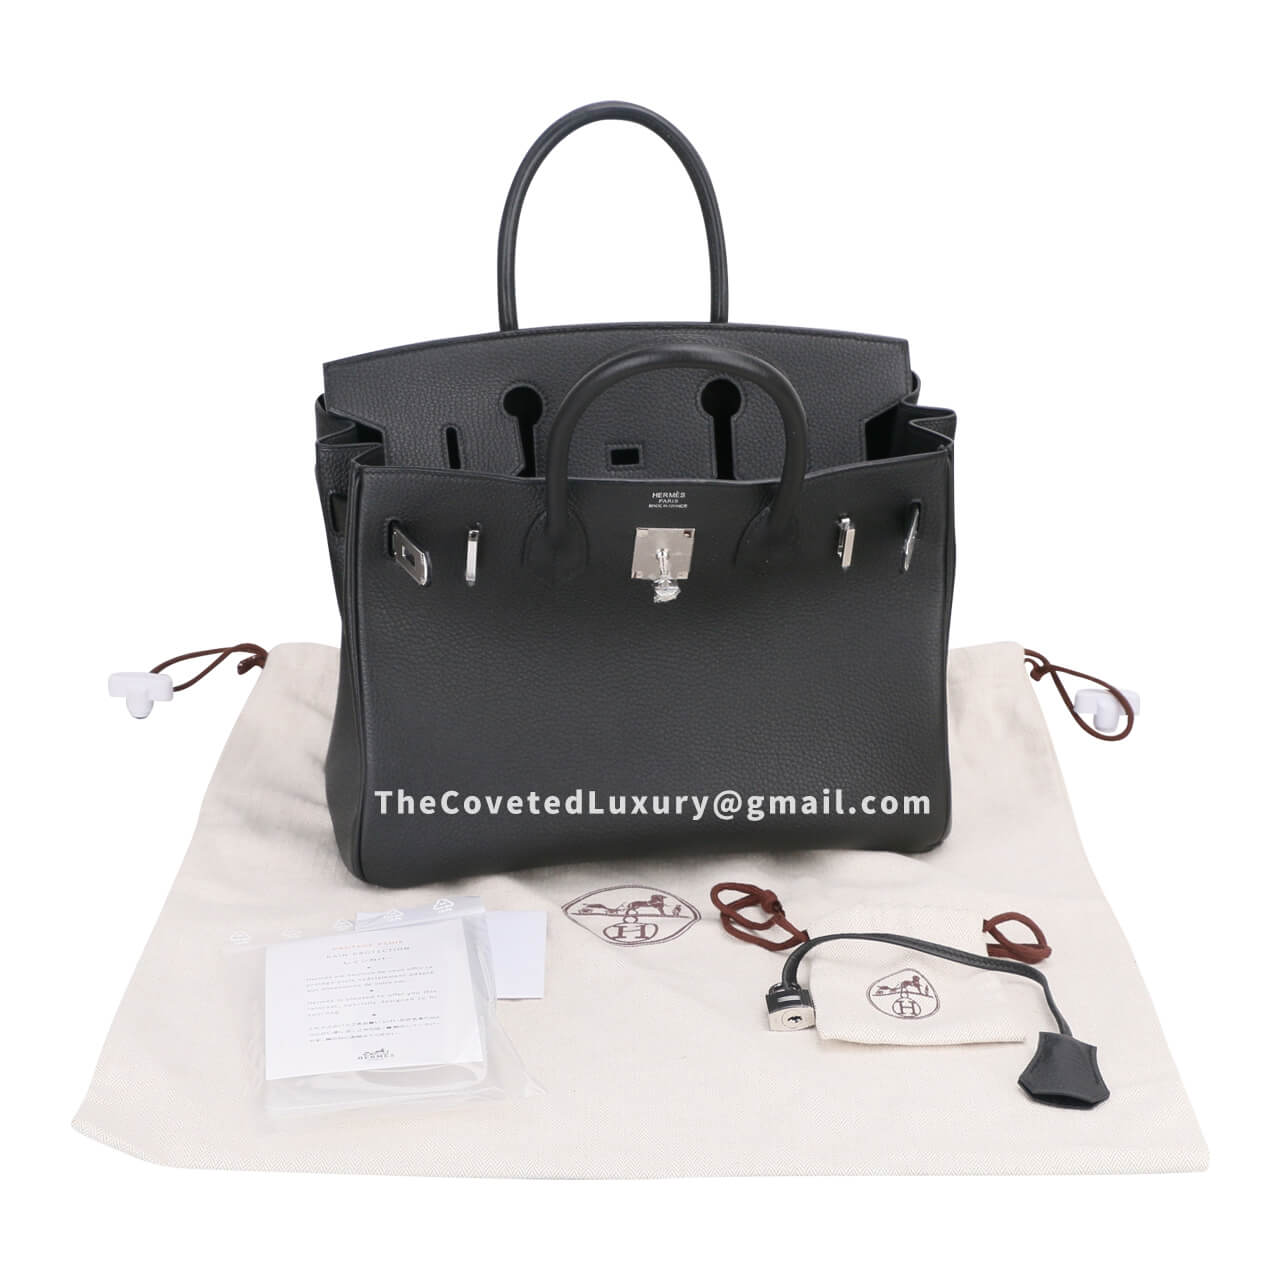 Hermes Birkin bag 35 Black Togo leather replica - Affordable